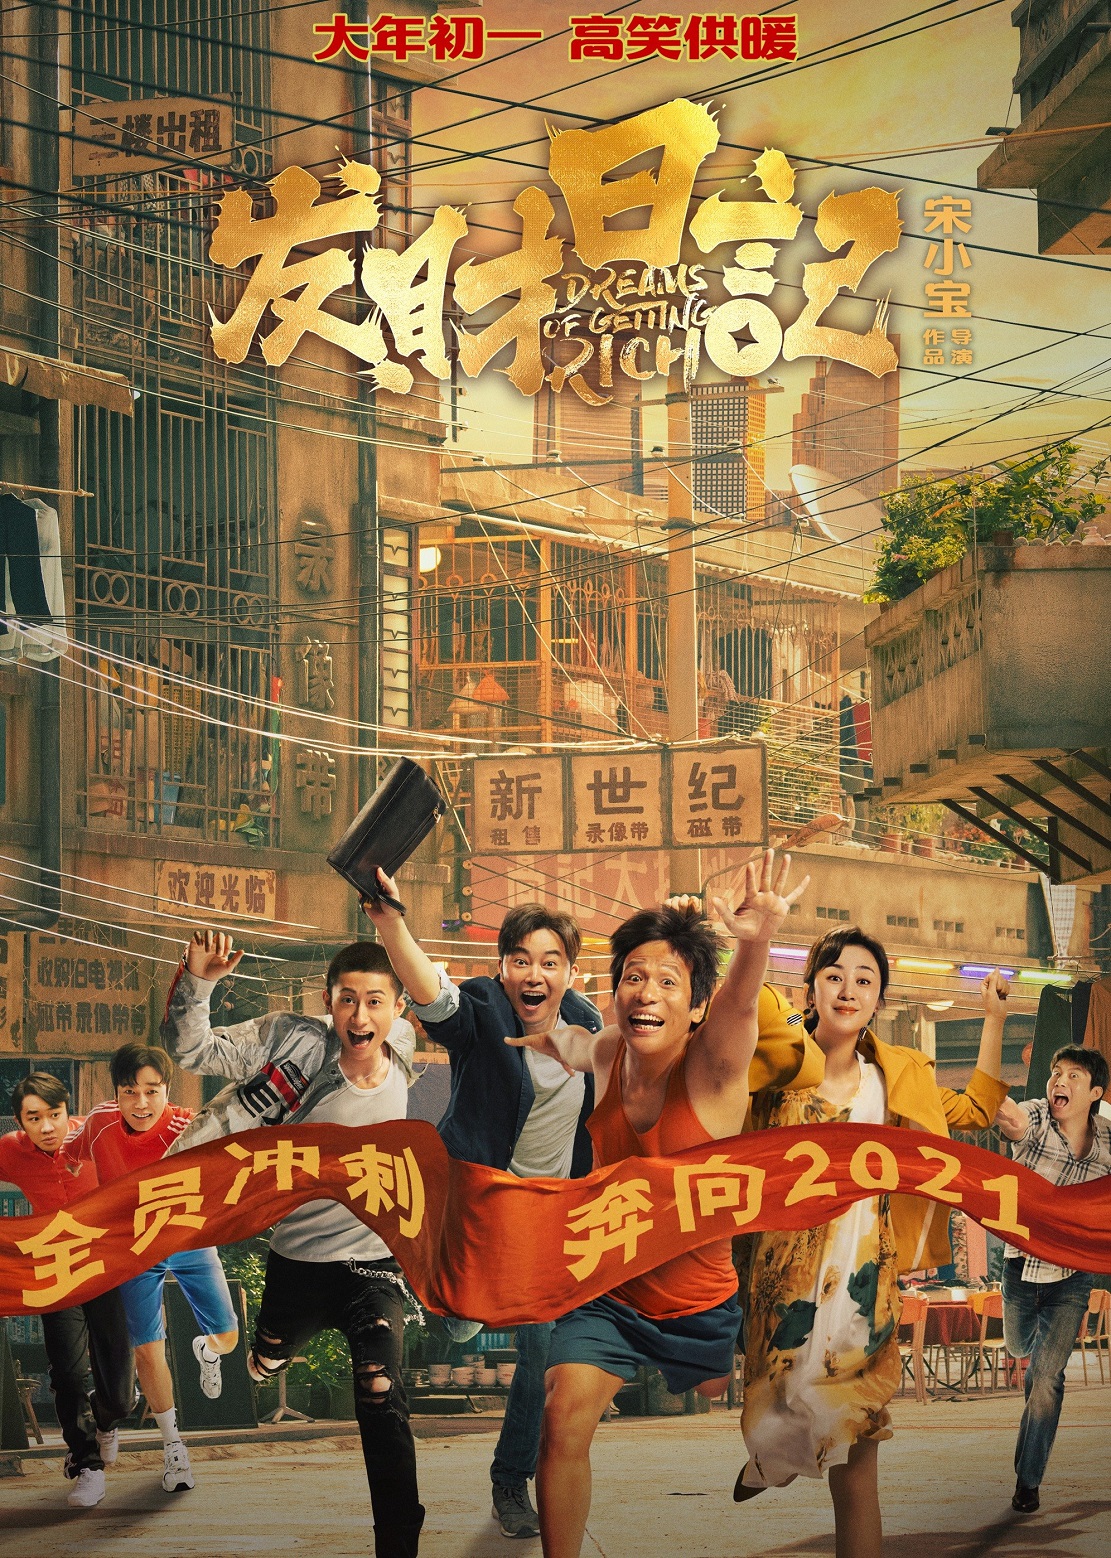 Poster Phim Giấc Mộng Giàu Sang (Dreams of Getting Rich)